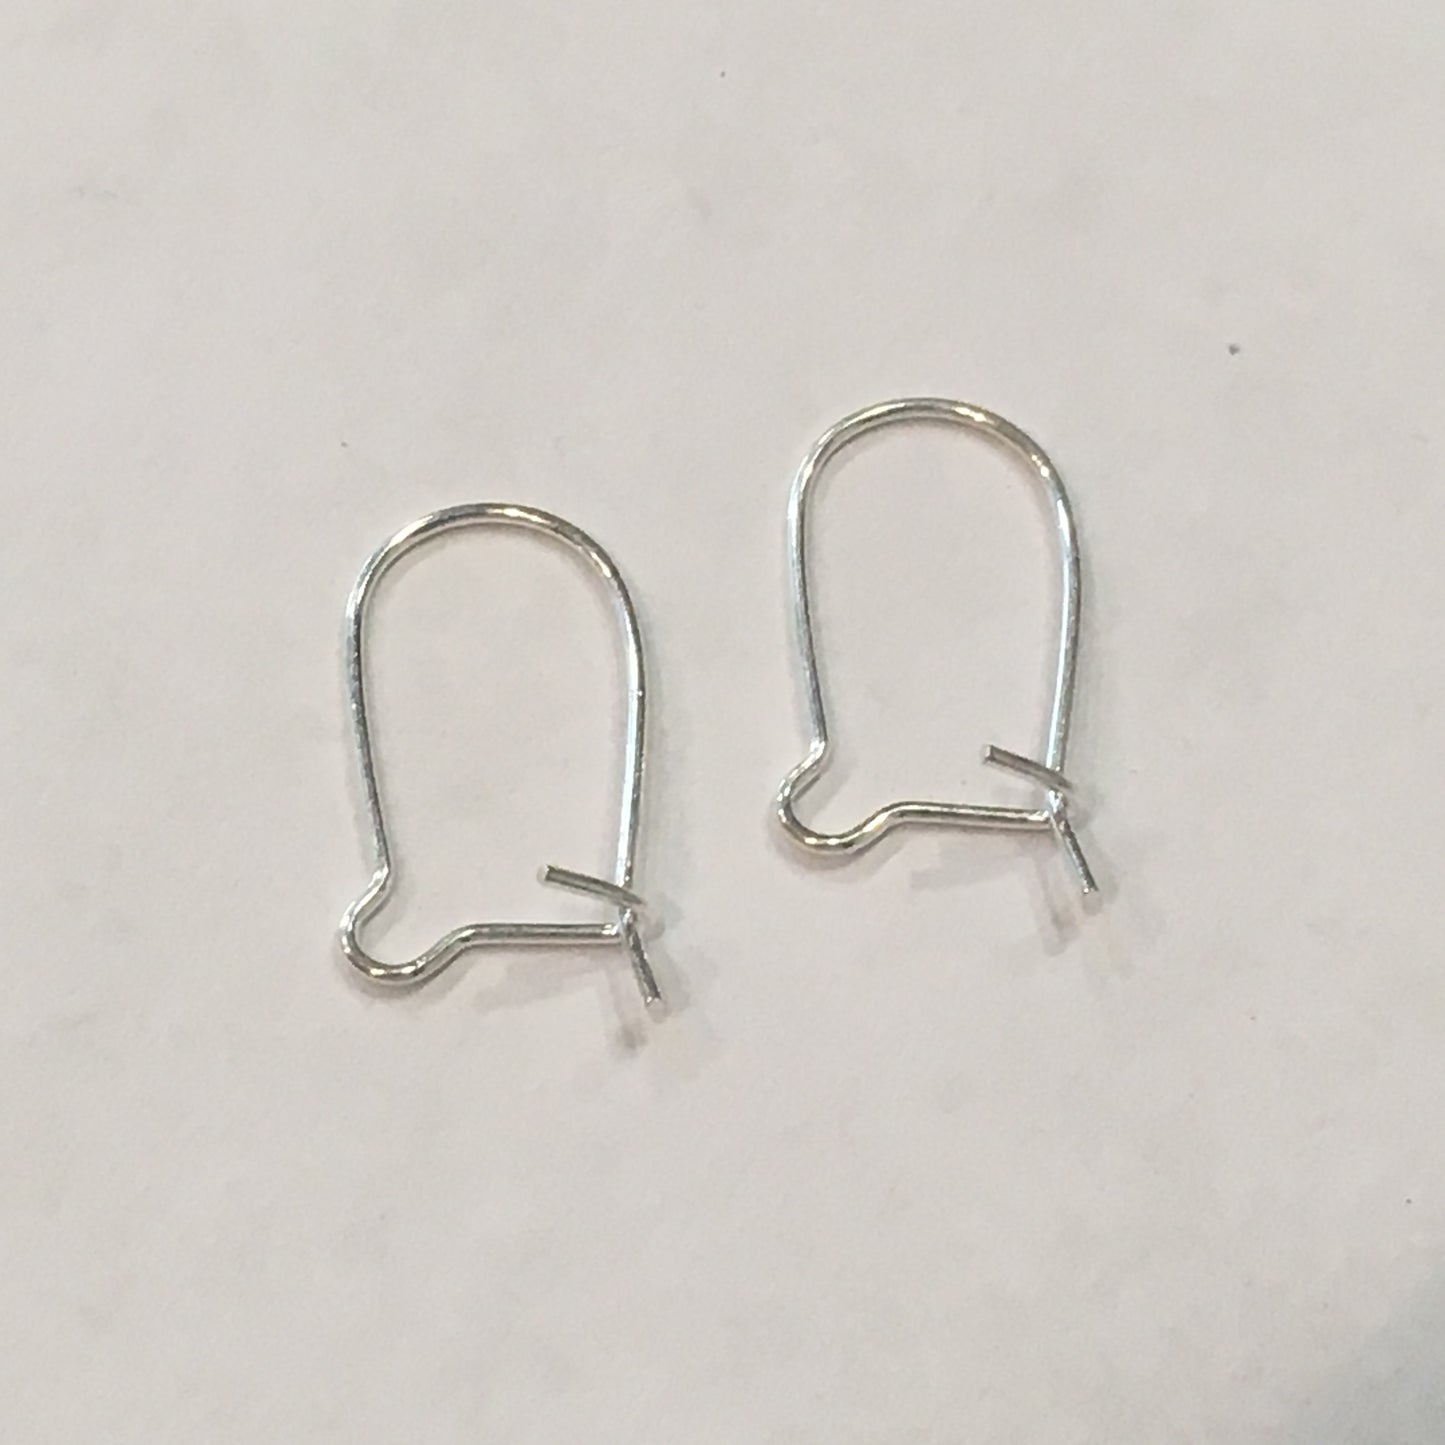 22-Gauge 16 mm Silver Kidney Ear Wires - 1 or 5 Pair